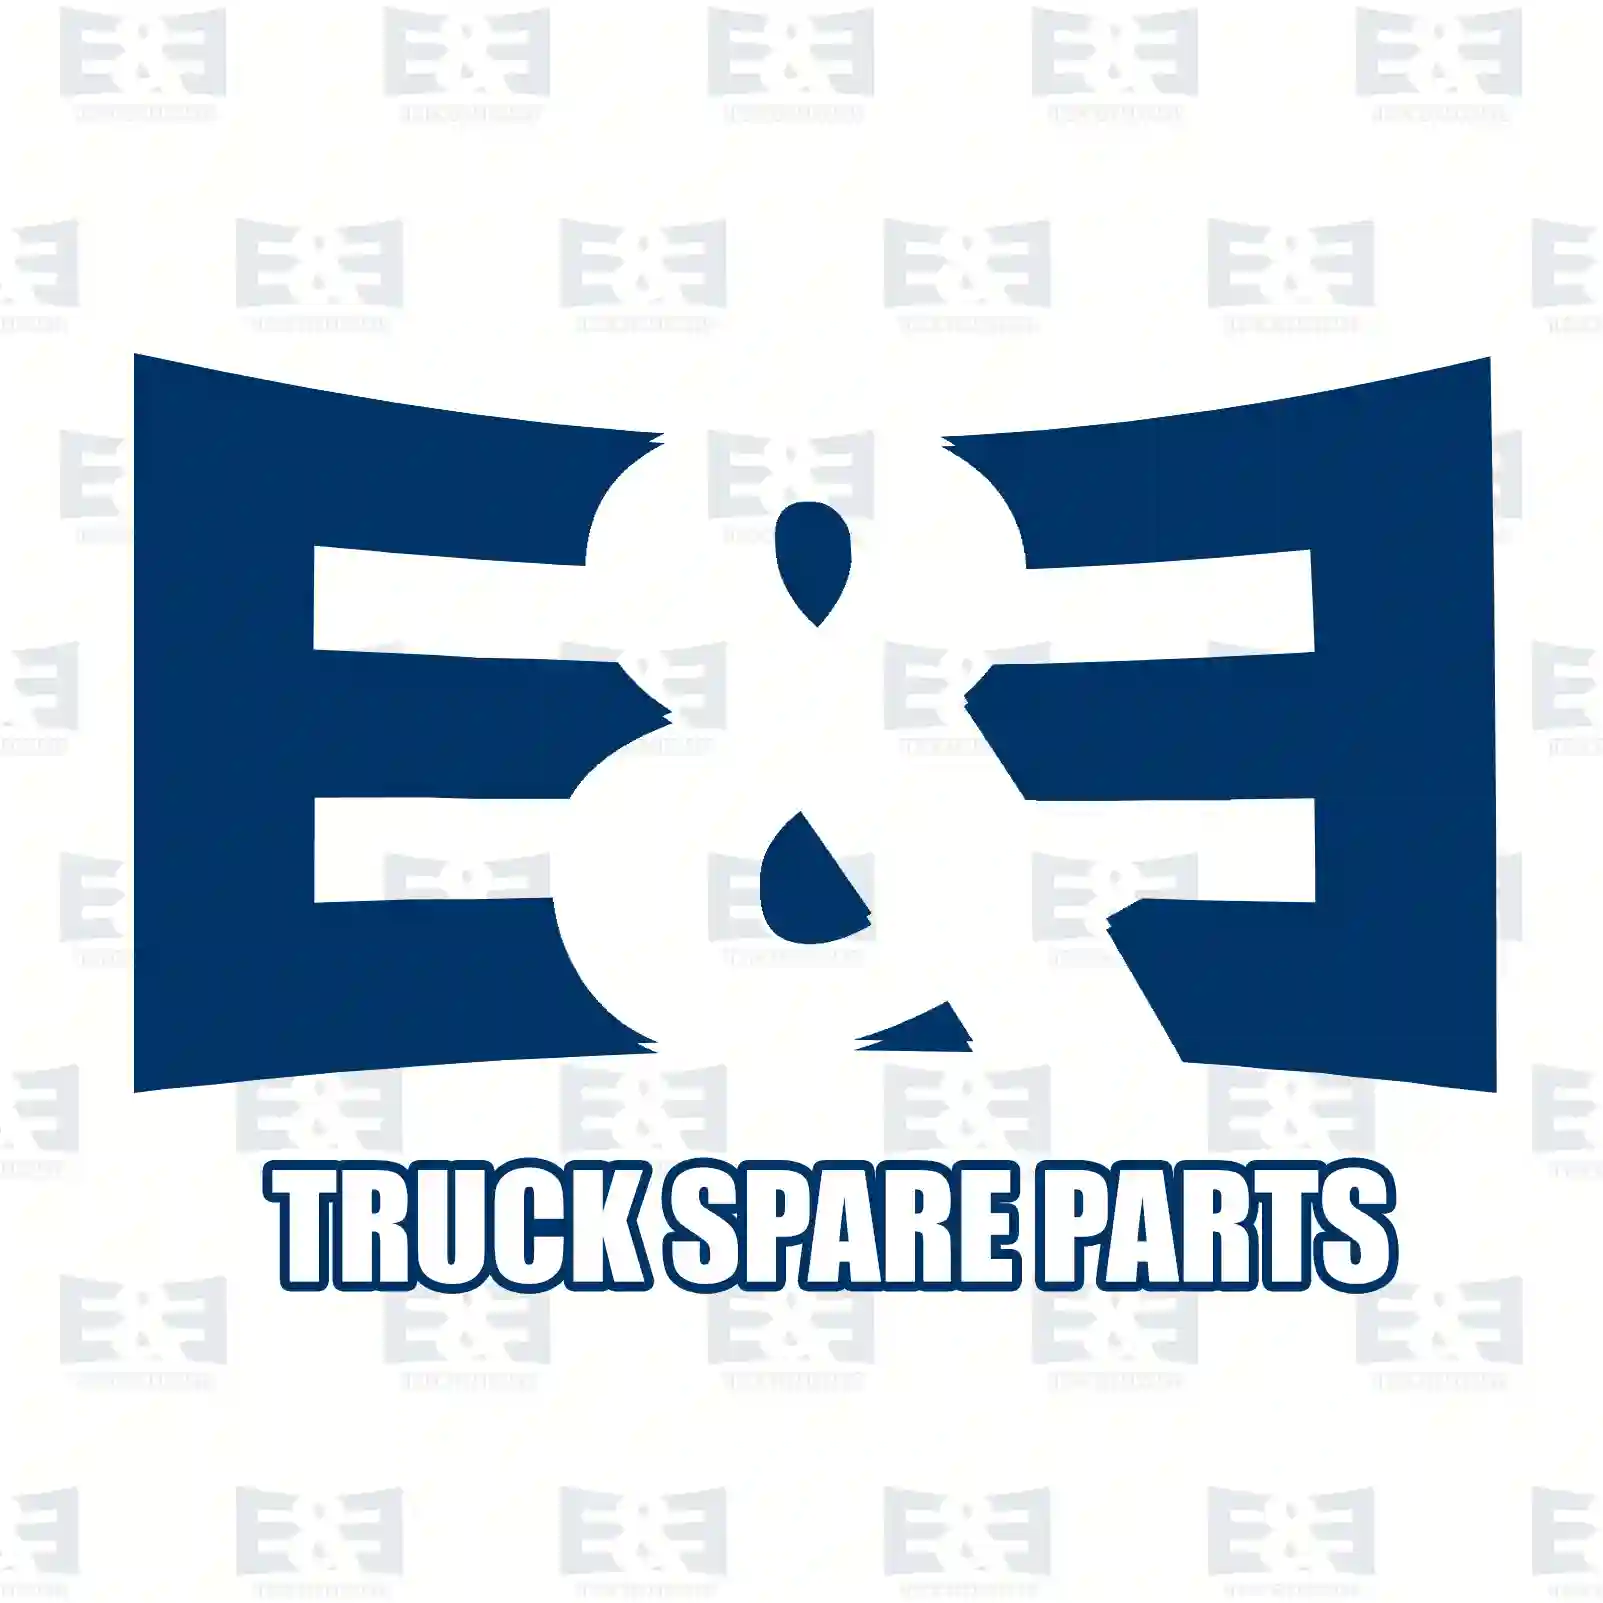 Stabilizer stay, 2E2283555, 9521922, ZG41775-0008, , ||  2E2283555 E&E Truck Spare Parts | Truck Spare Parts, Auotomotive Spare Parts Stabilizer stay, 2E2283555, 9521922, ZG41775-0008, , ||  2E2283555 E&E Truck Spare Parts | Truck Spare Parts, Auotomotive Spare Parts